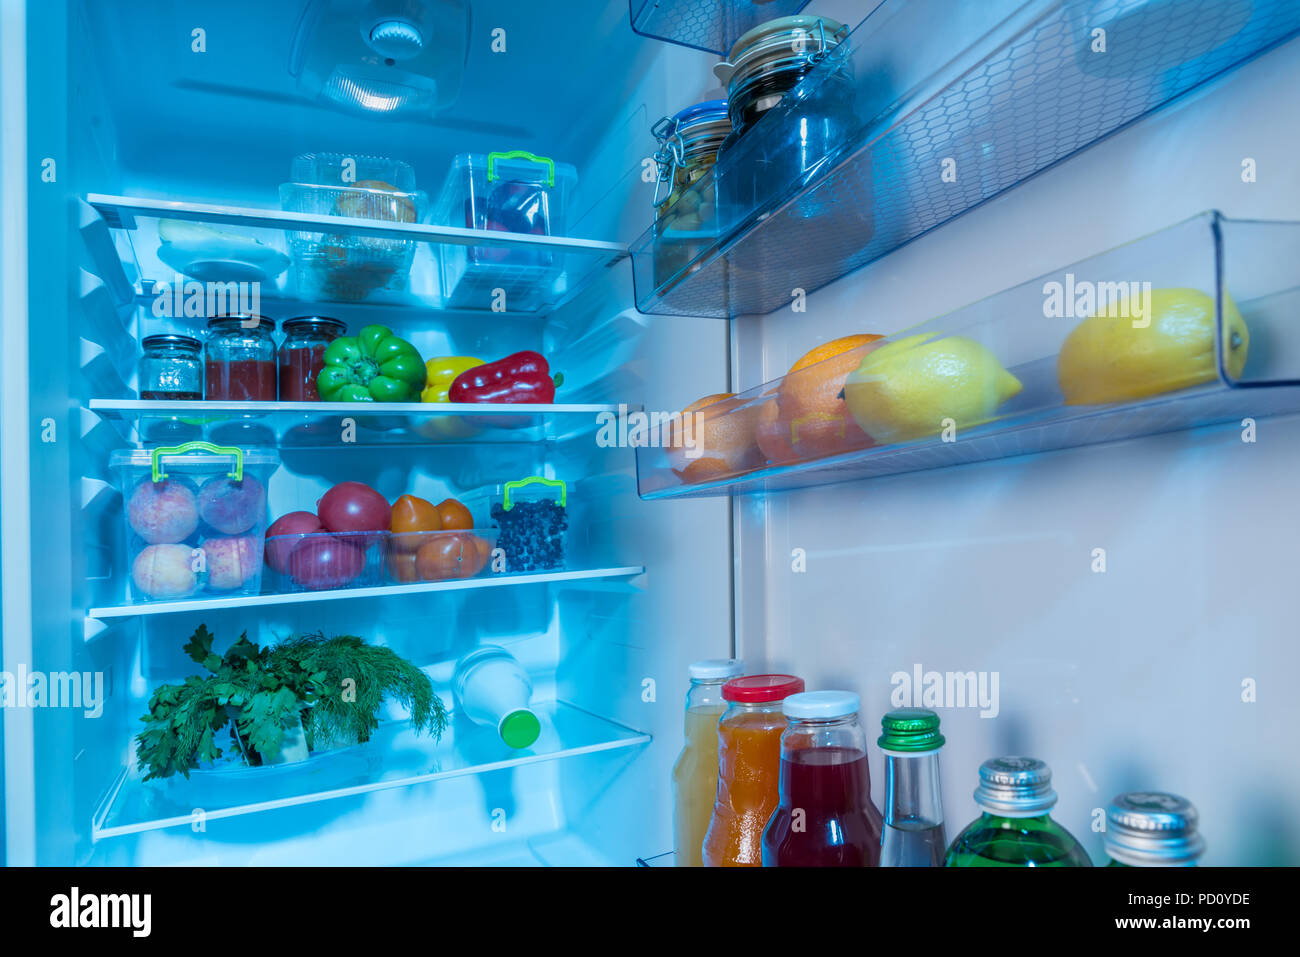 Innenraum aus einem Kühlschrank mit frischem Gemüse, Obst und Saft in einer  gesunden Diät Konzept verpackt Öffnen Stockfotografie - Alamy